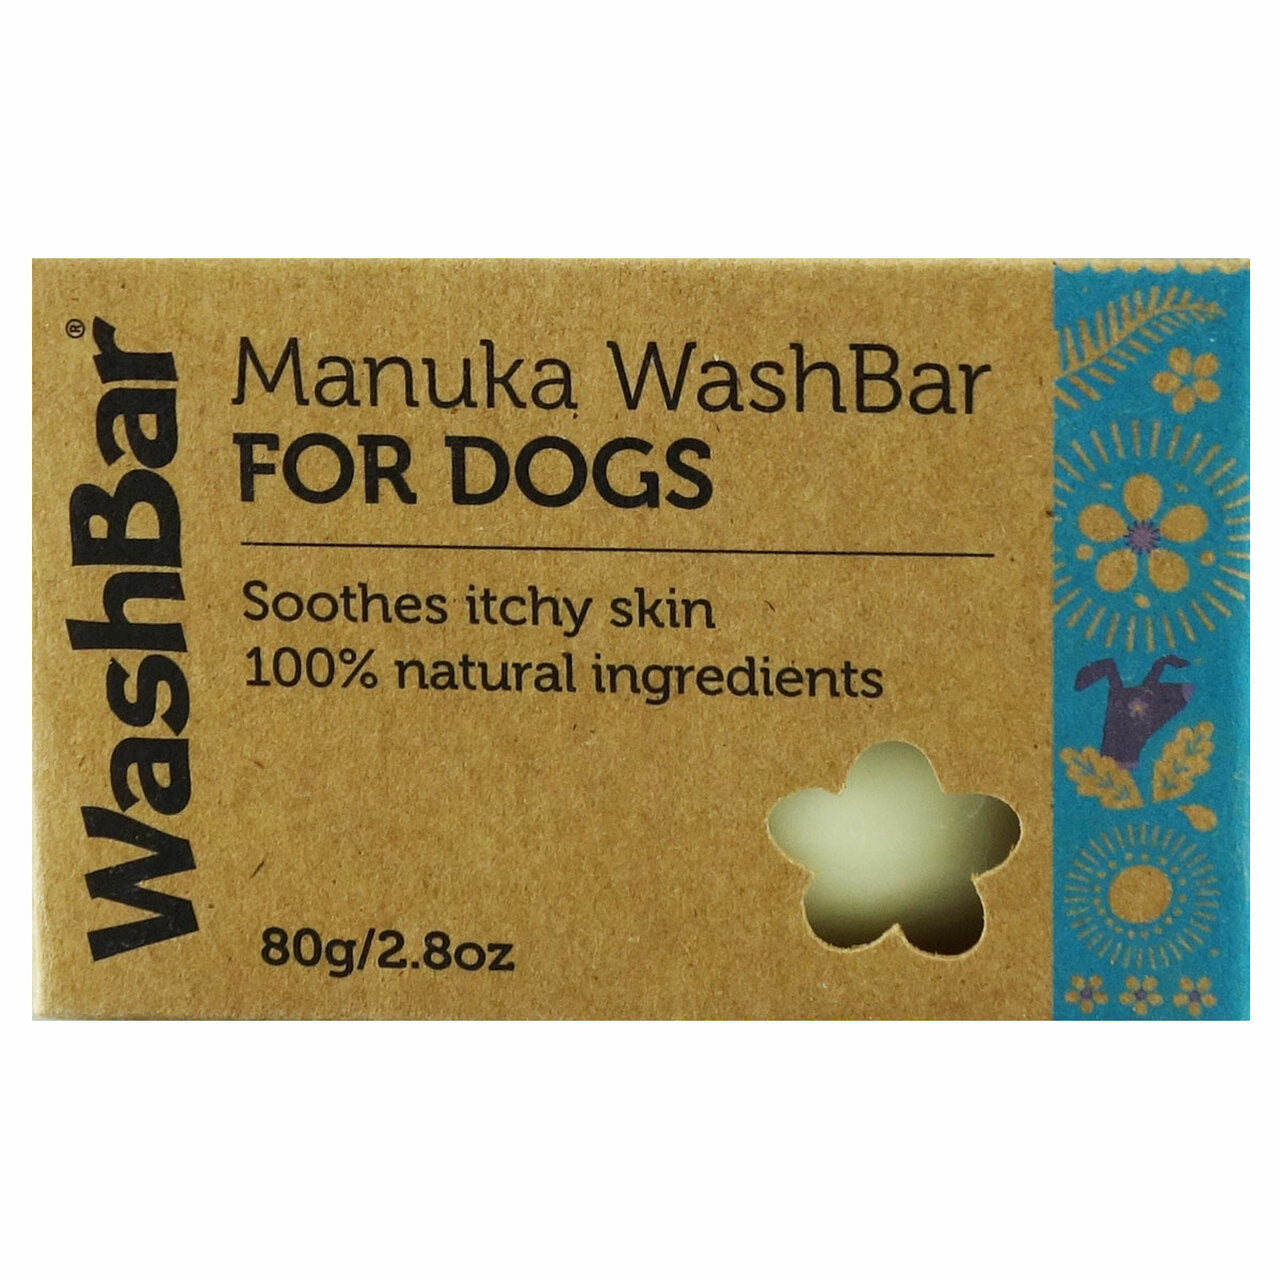 Manuka Washbar Dogs